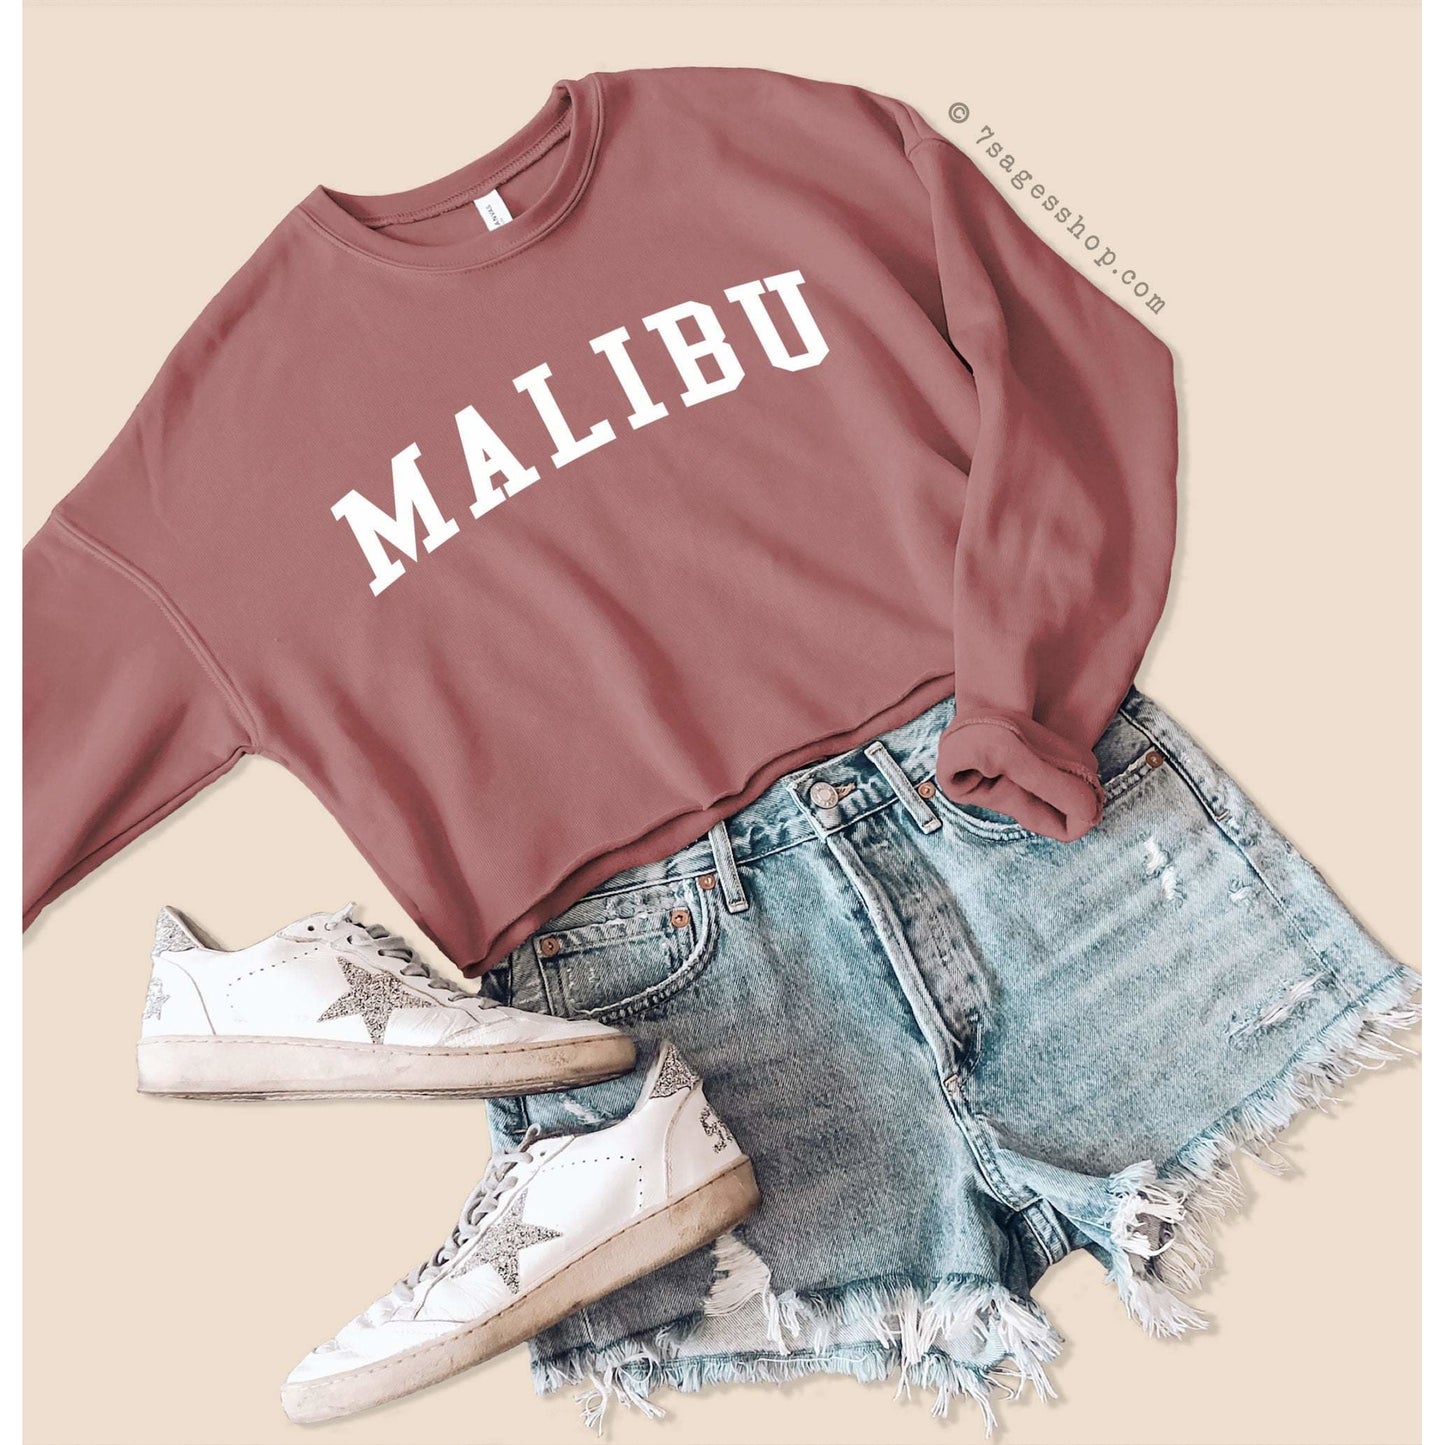 Malibu Cropped Sweatshirt Malibu Sweatshirt California Shirts California Crop Top California Sweatshirt Malibu Sweater